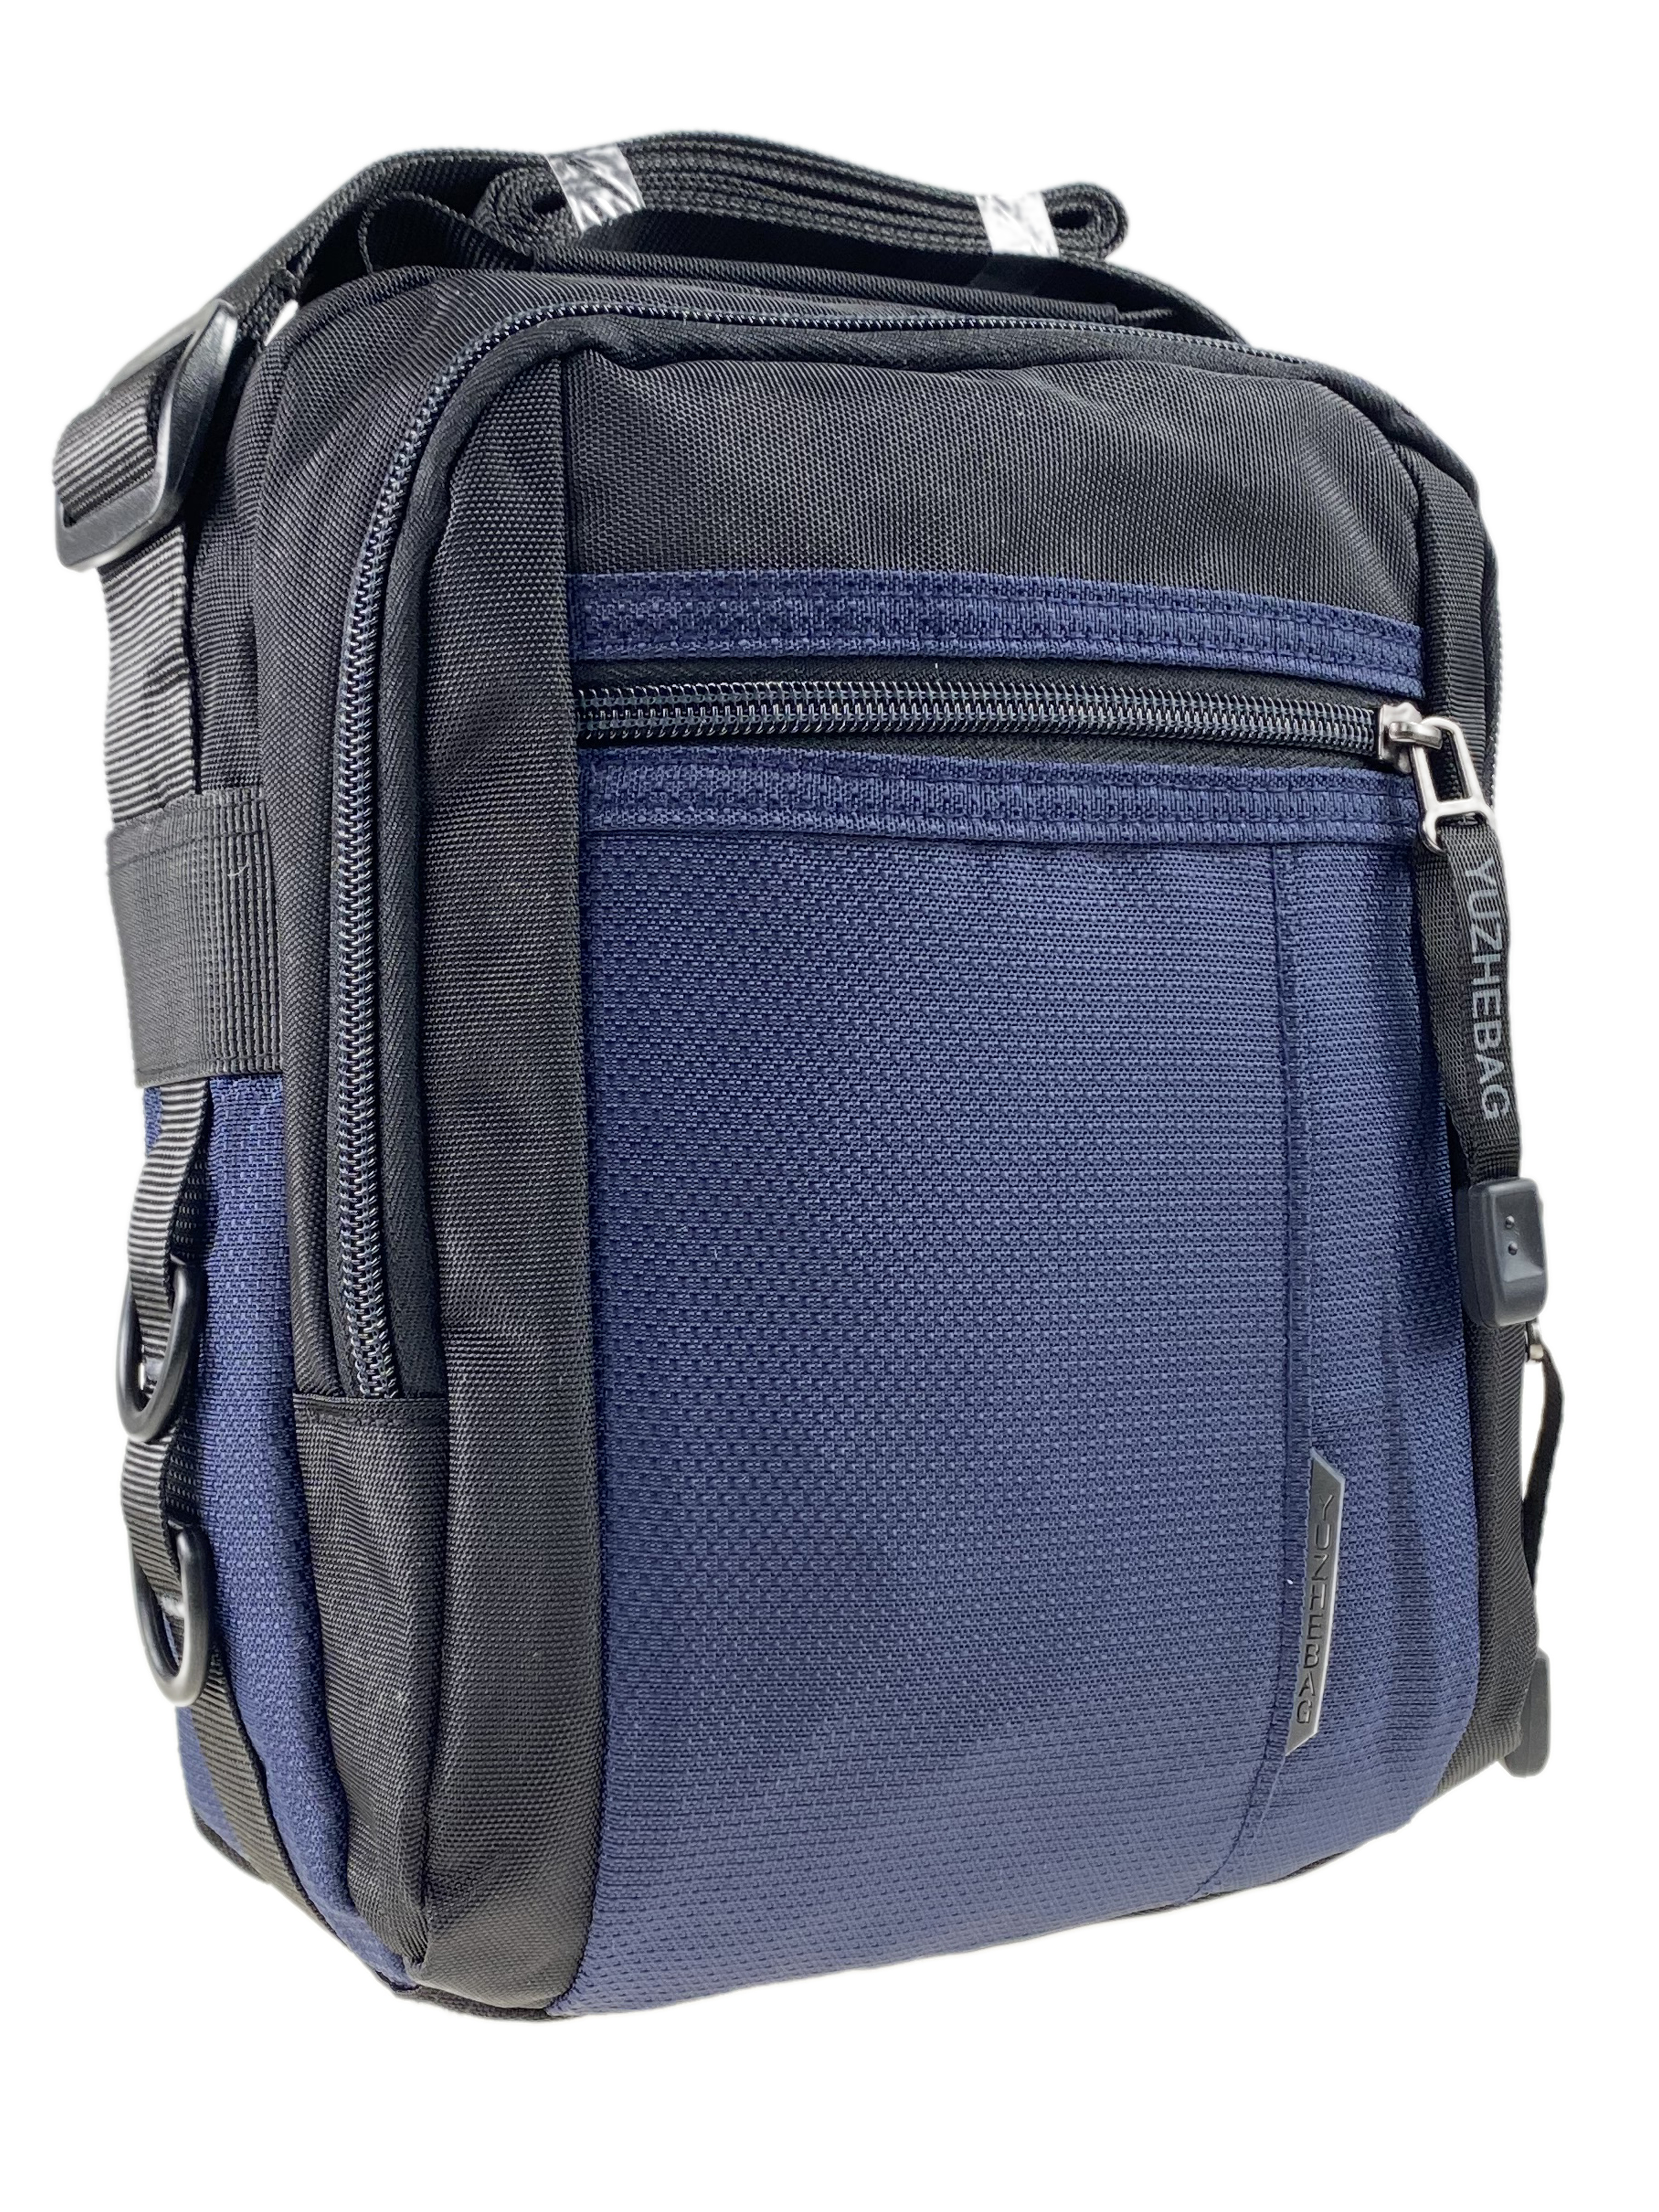 Мужская сумка из текстиля, цвет синий/чёрный